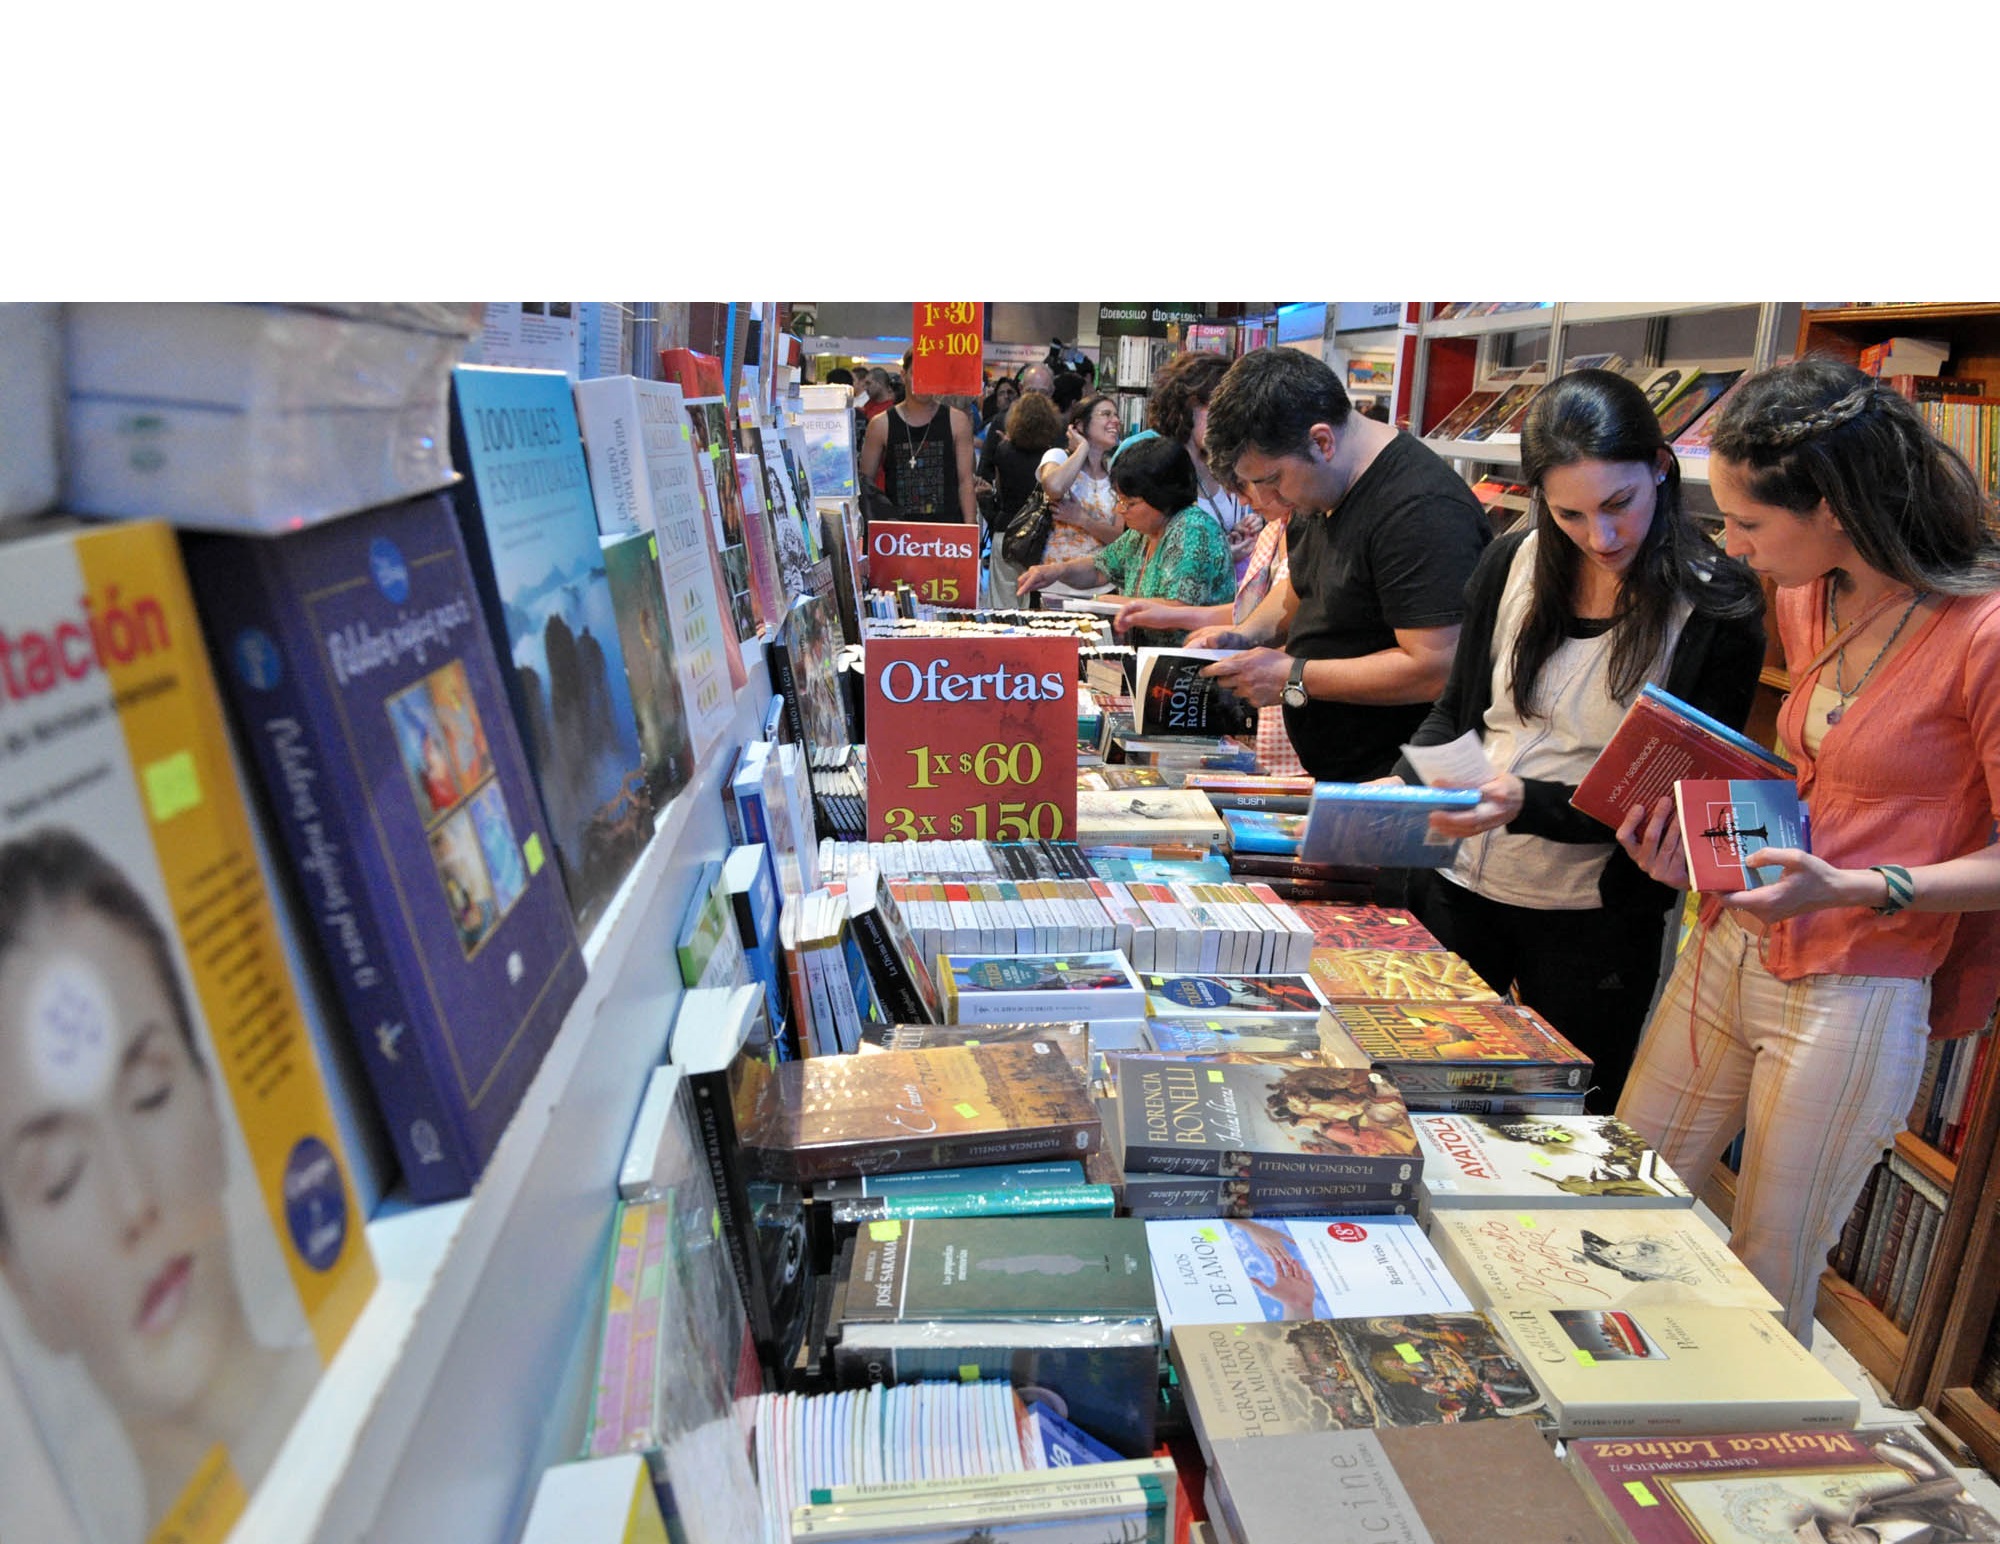 La Feria Internacional del Libro llega al país con diversas casas editoriales, materiales de todo tipo y múltiples actividades para disfrutar del conocimiento